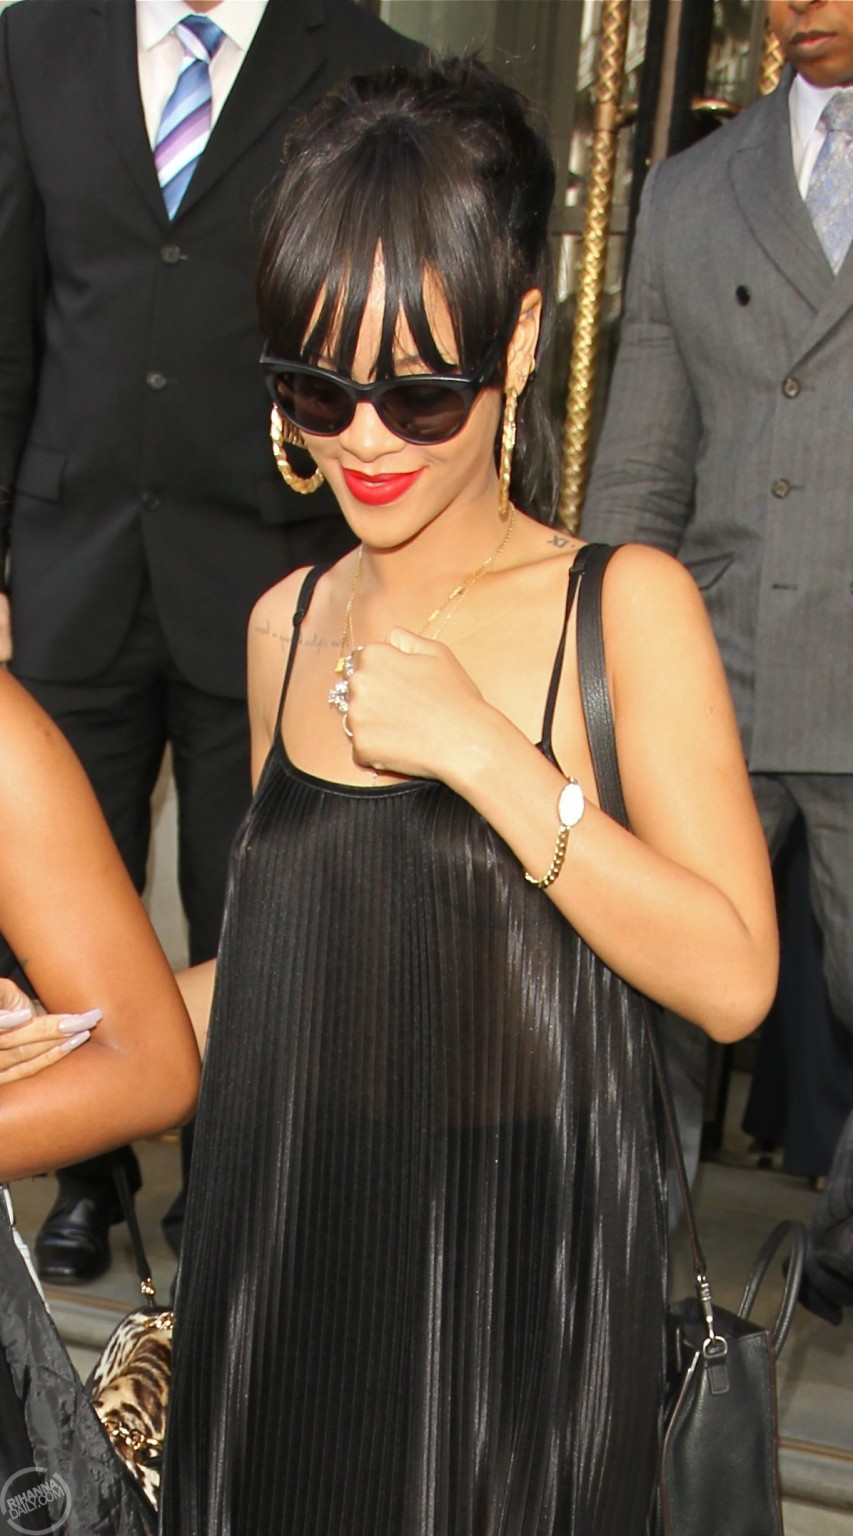 Rihanna sin sujetador y con un top transparente saliendo de su hotel en Londres
 #75259148